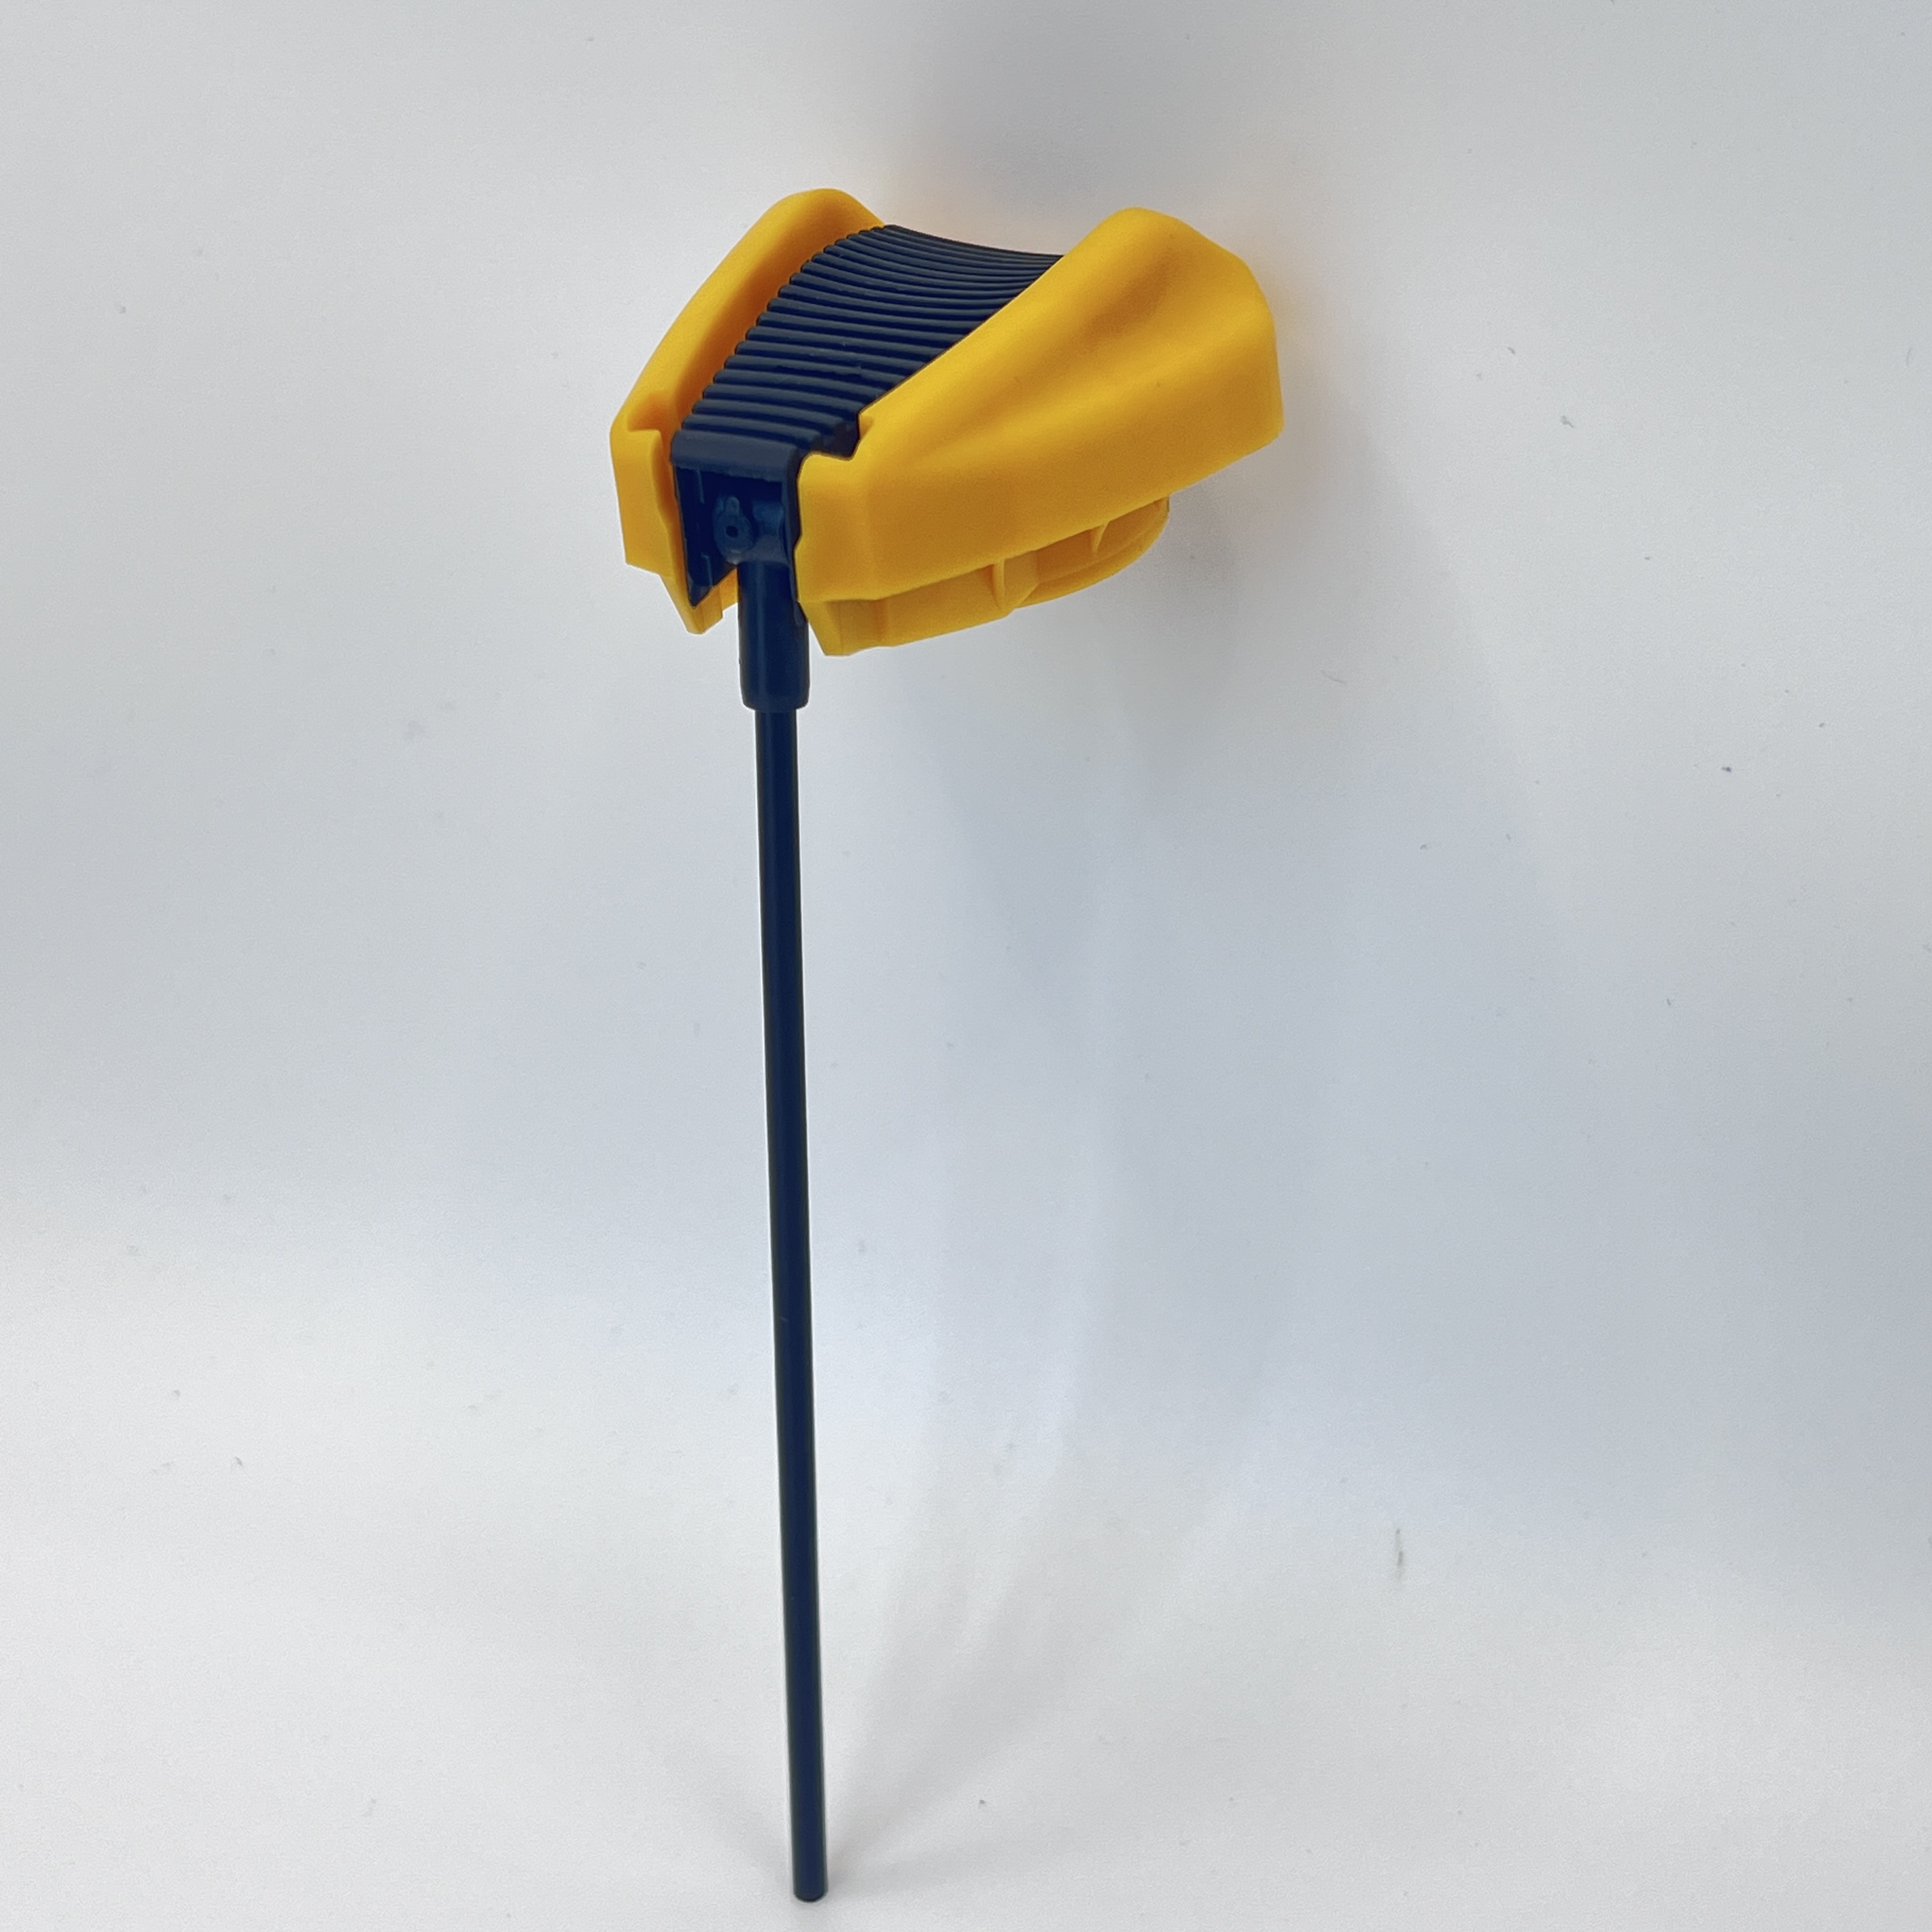 Válvula de aerosol de pulverización de ventilador ajustable: solución versátil para aplicaciones domésticas